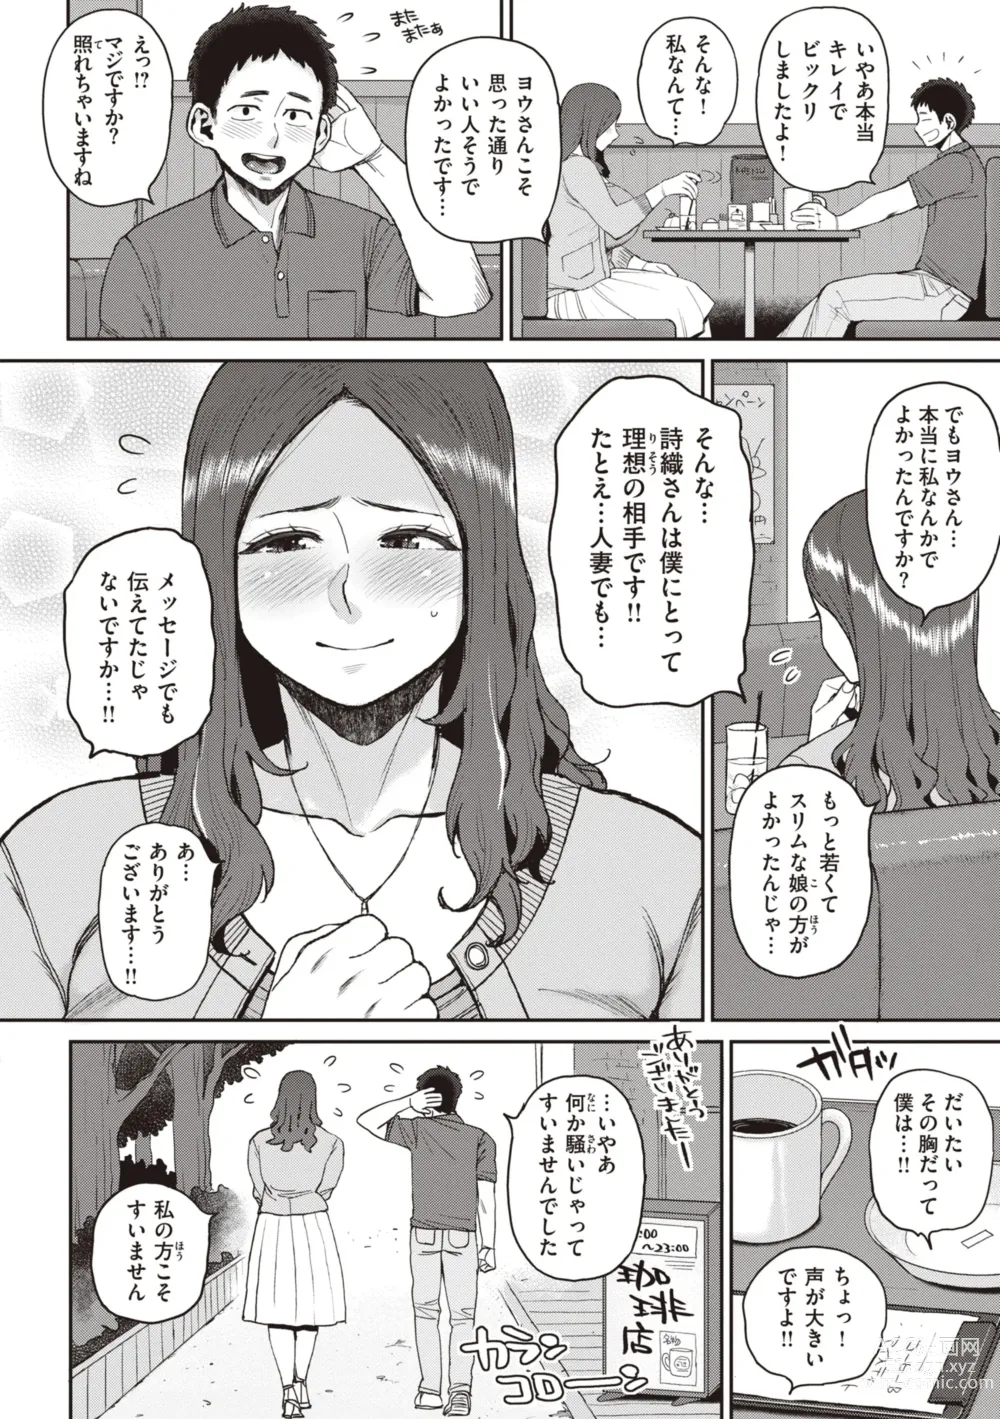 Page 6 of manga Hitodzuma no uso wa sugu bareru